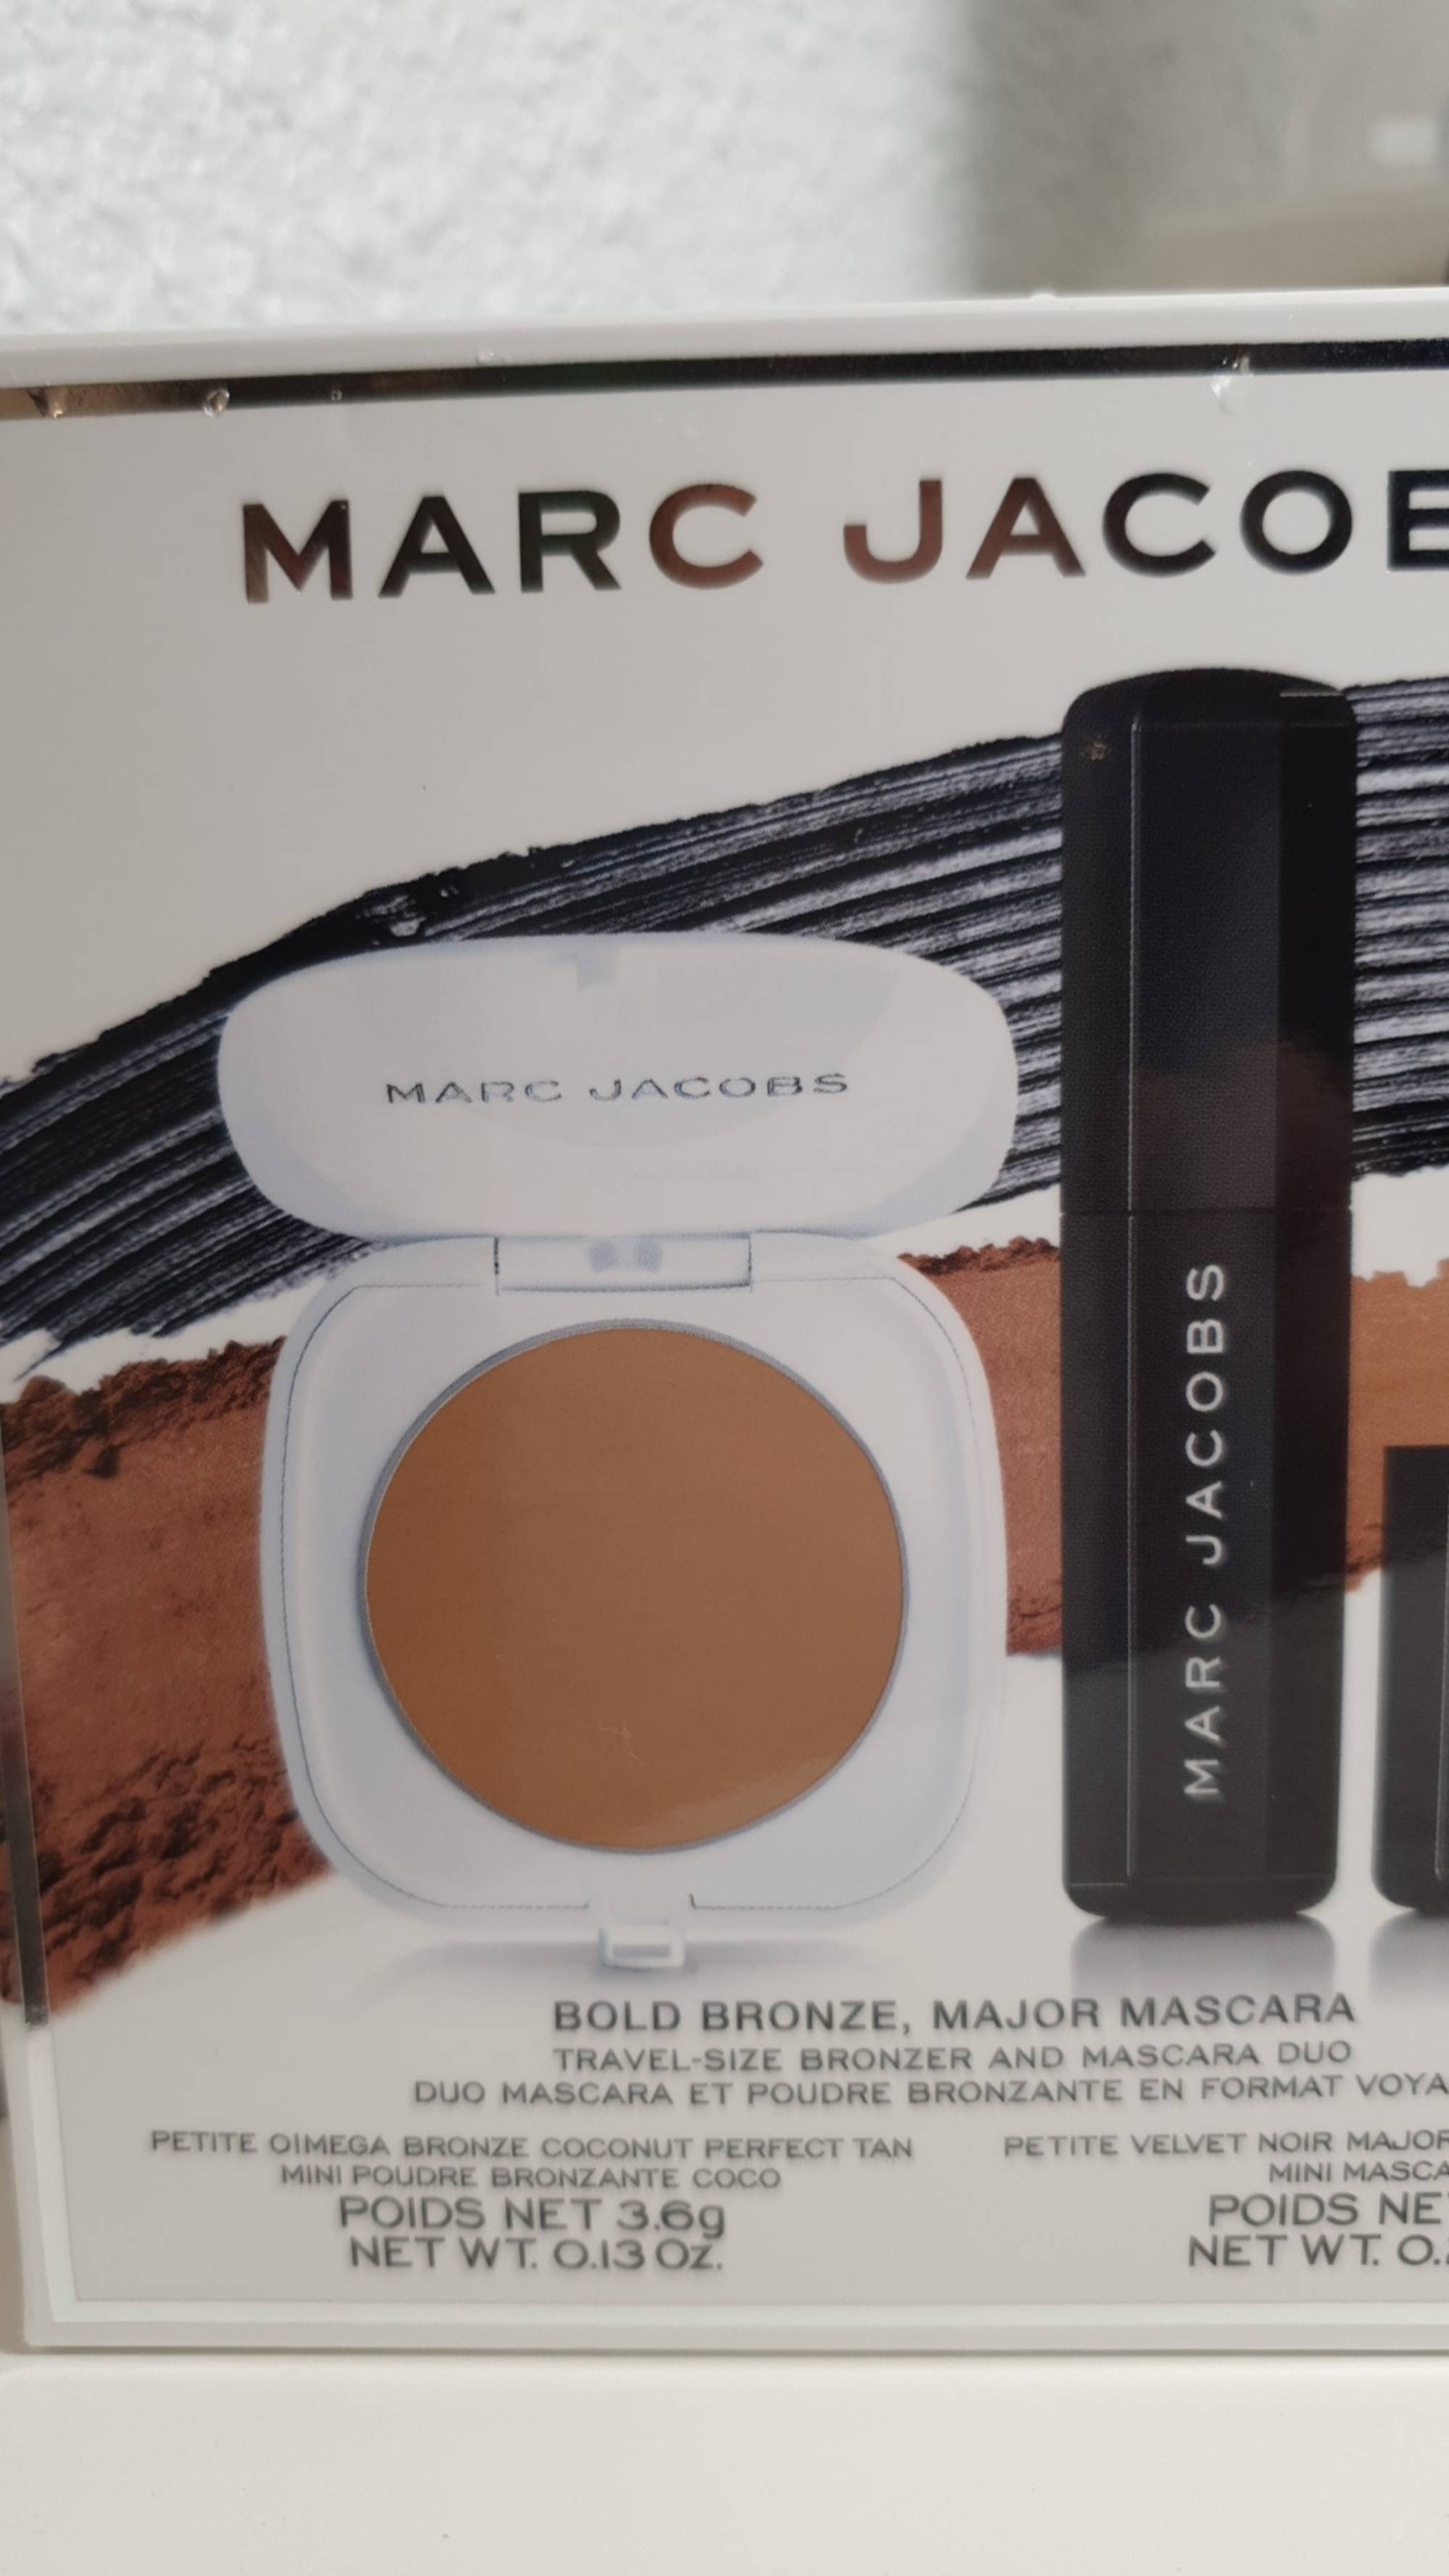 MARC JACOBS - Duo mascara et poudre bronzante en format voyage